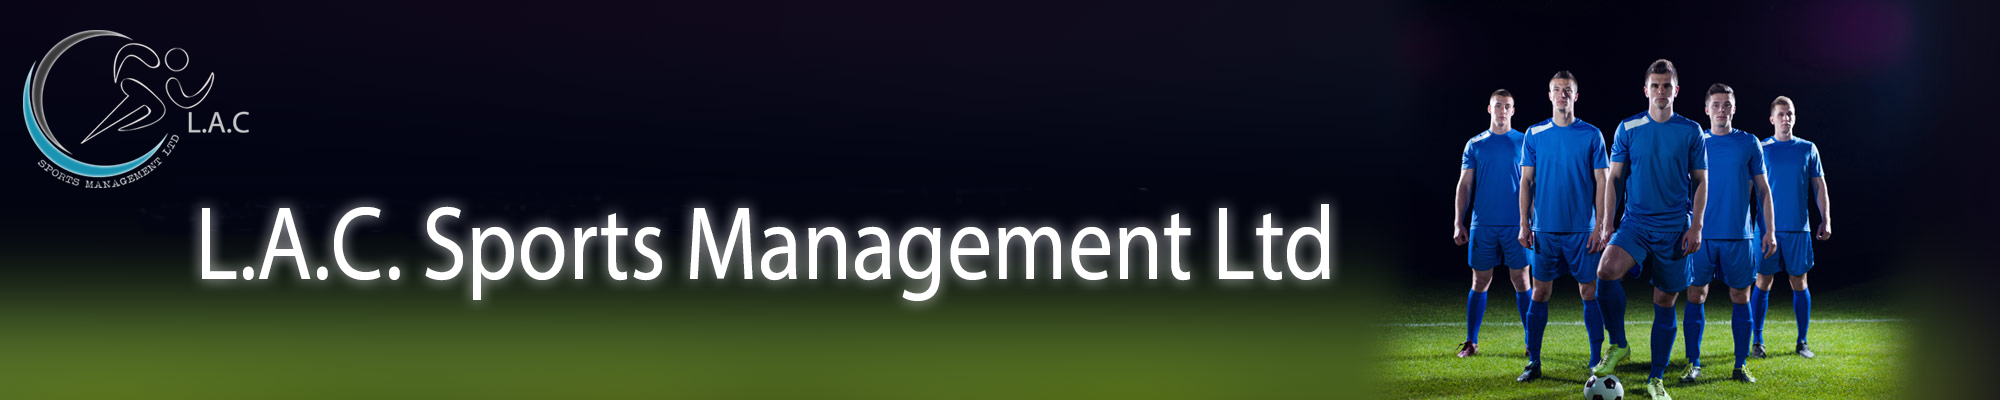 LAC Sports Management Ltd